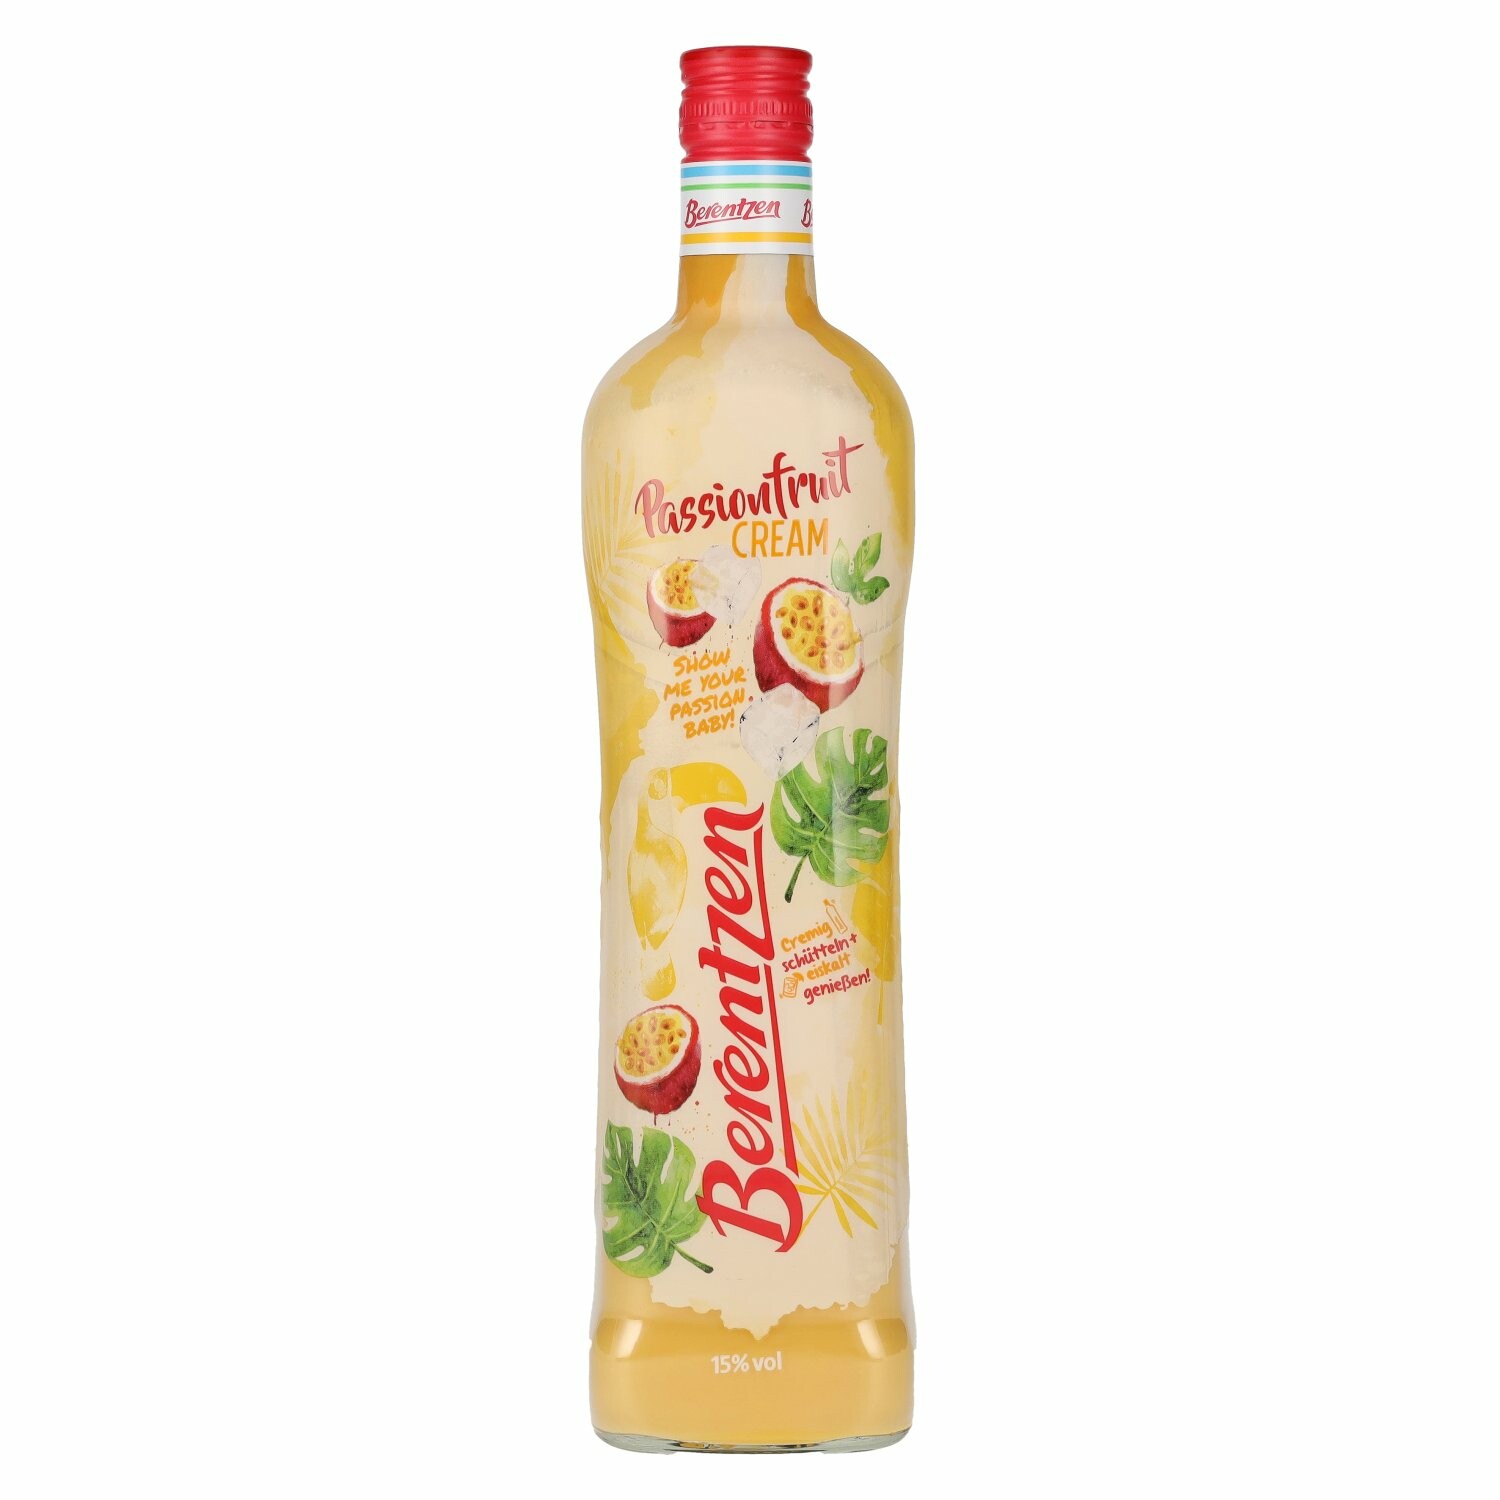 Berentzen Passionfruit Cream 15% Vol. 0,7l